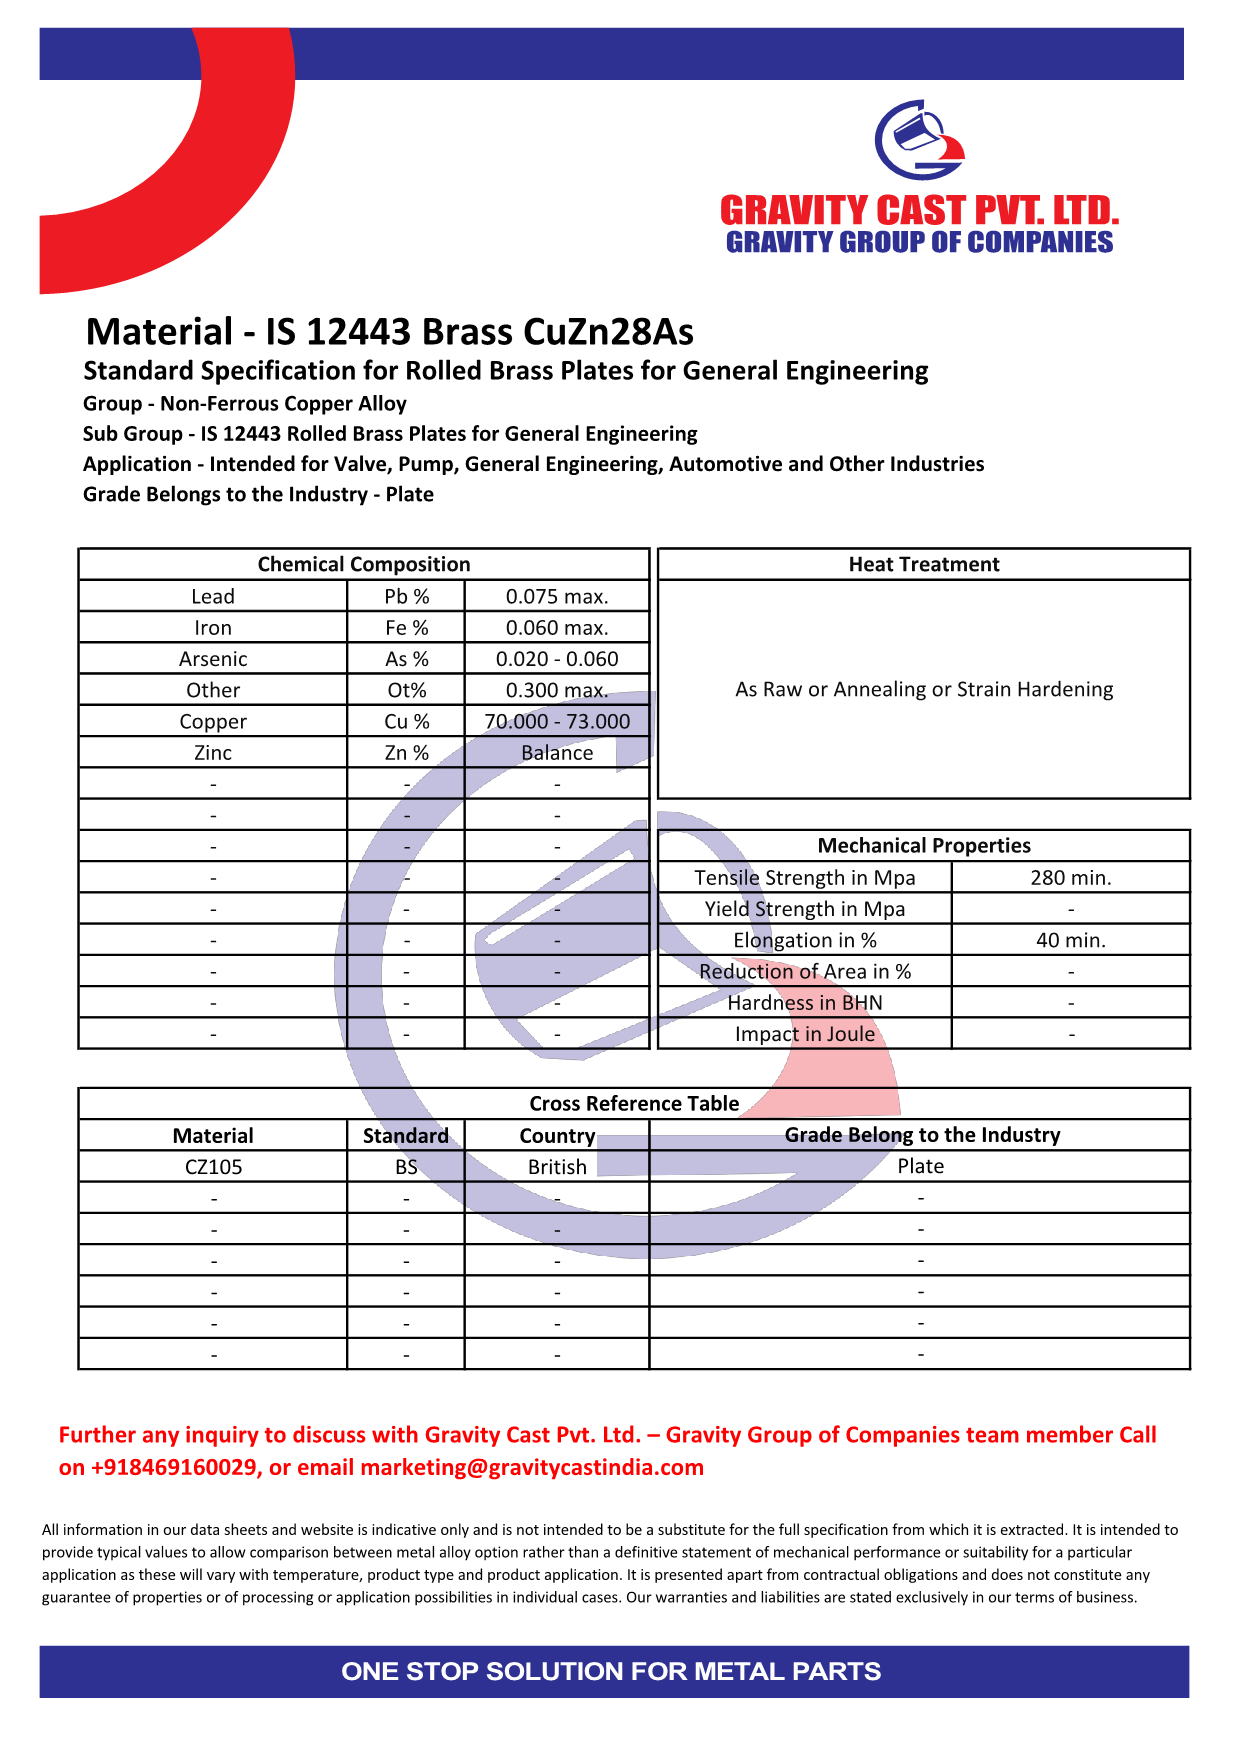 IS 12443 Brass CuZn28As.pdf